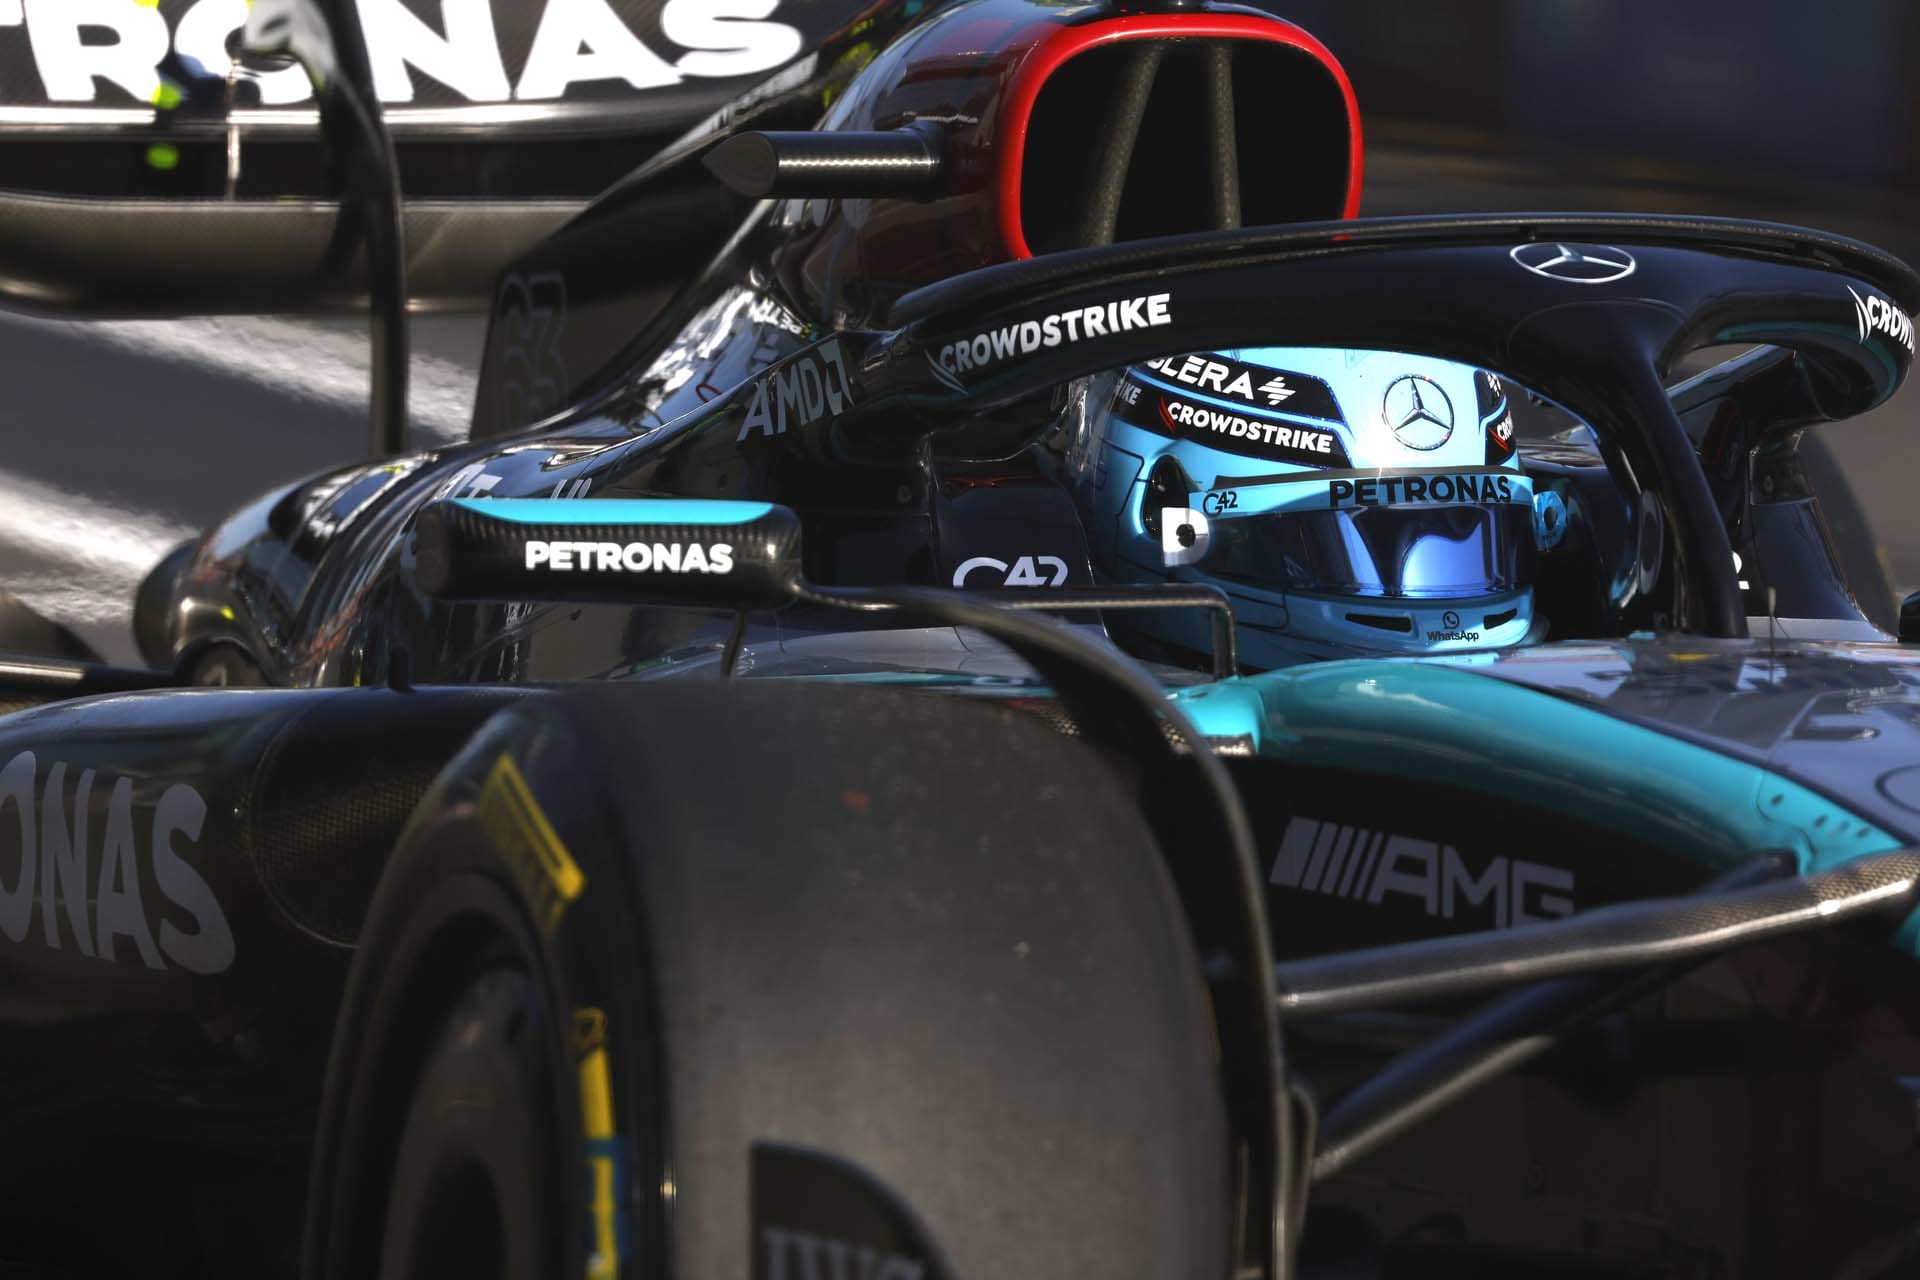 A Mercedes F1 csapat Melbourne óta dolgozik autója következetességén